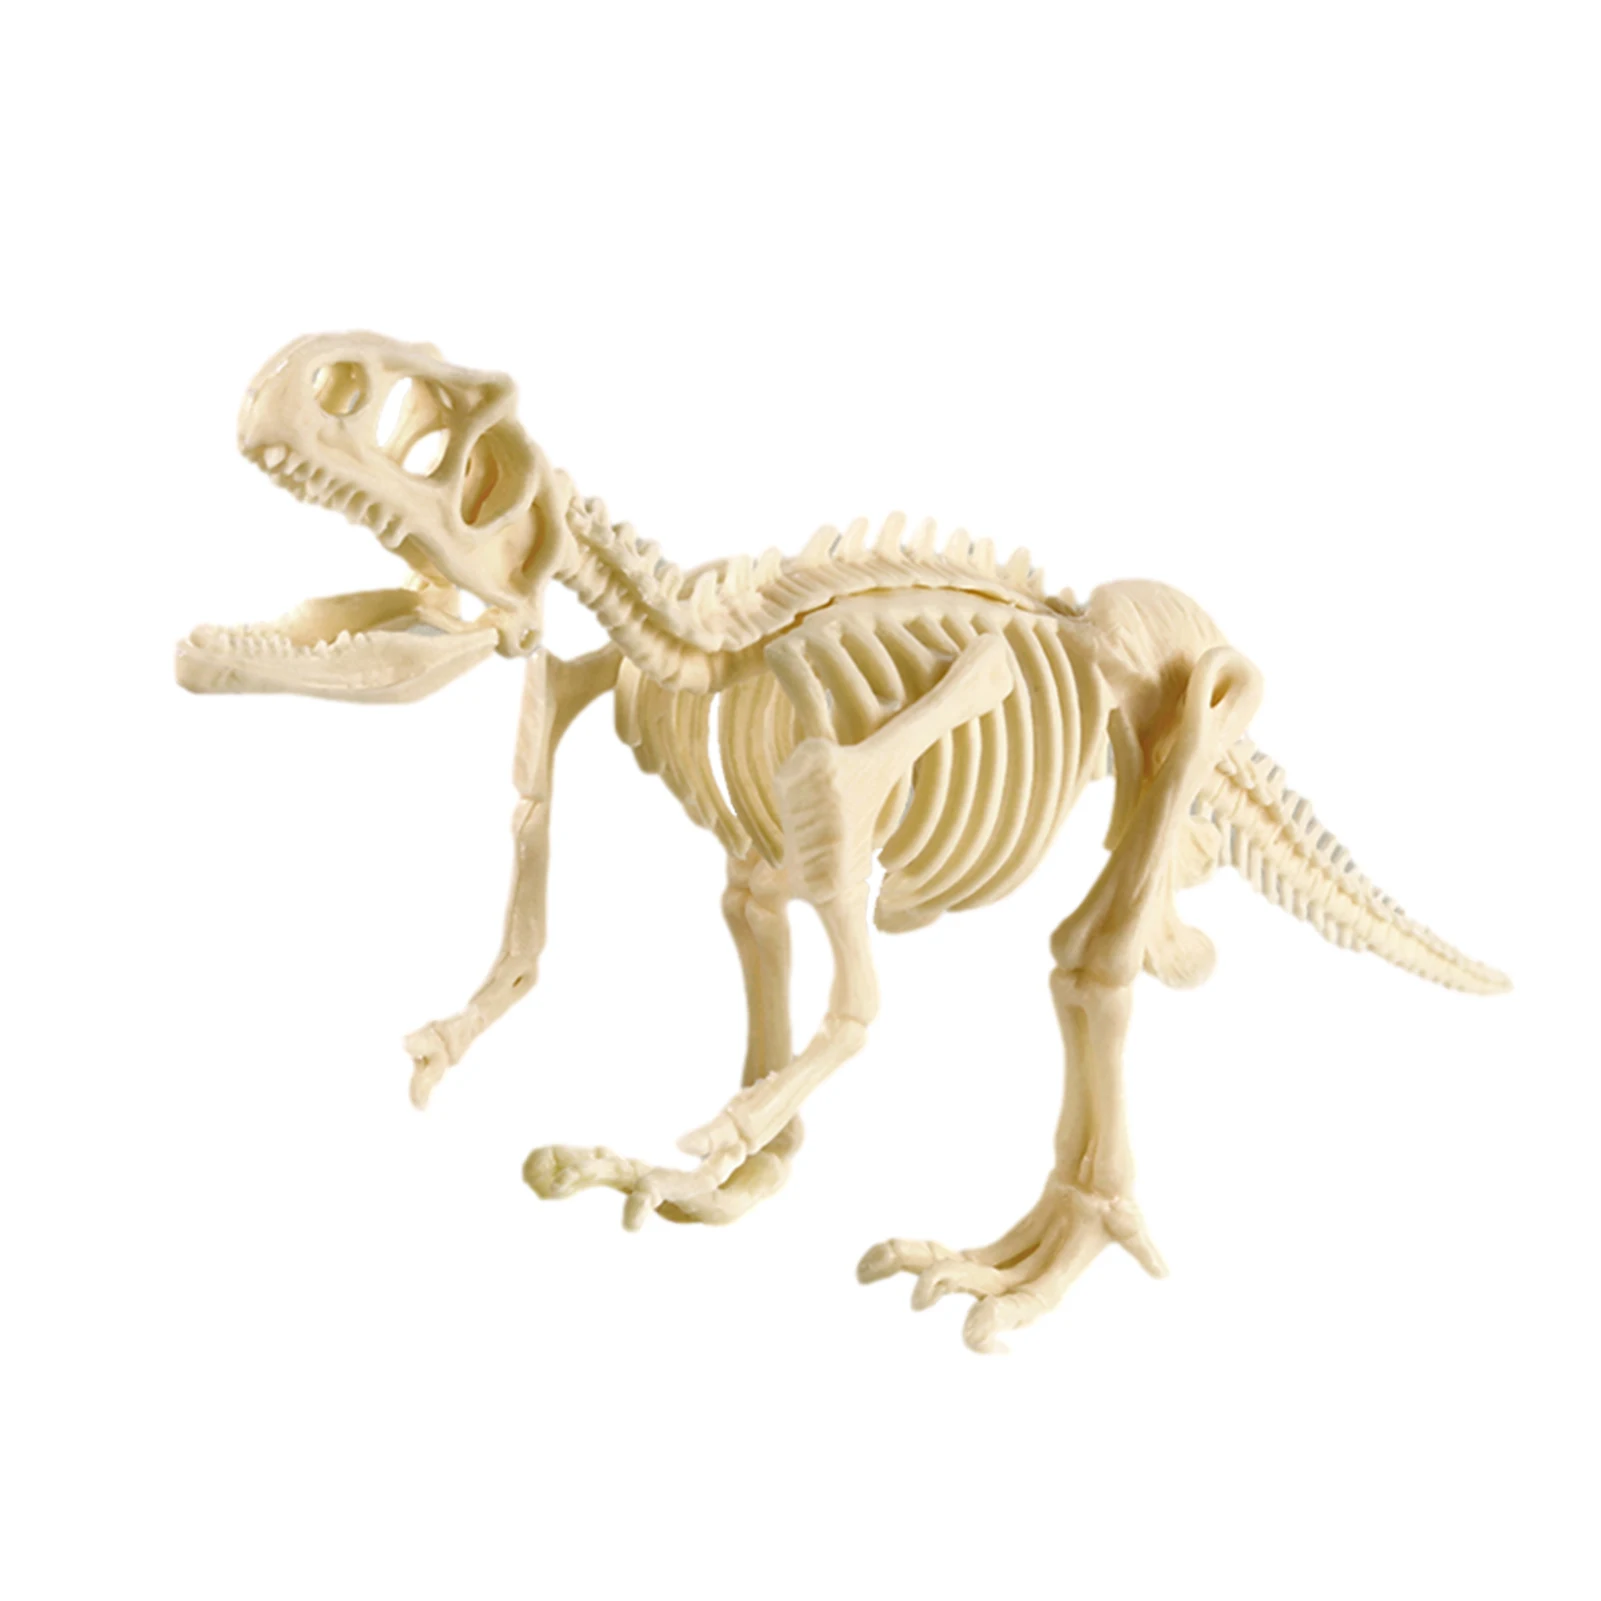 

Набор для сбора динозавров, археологические фотообои для детей и взрослых, динозавры, игрушки для творчества для детей, популярные науки